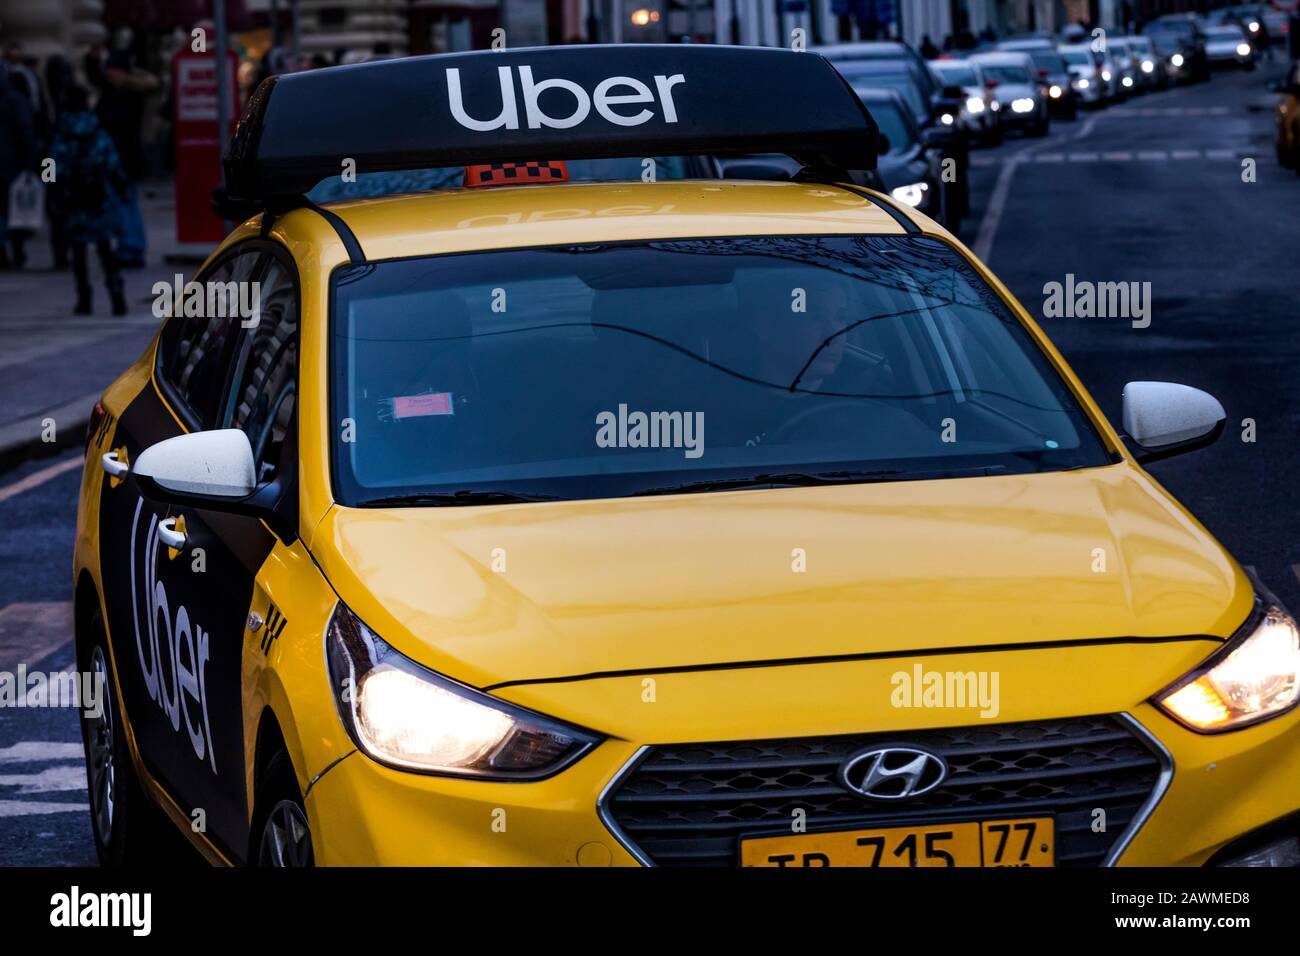 Nahaufnahme des Uber-Taxifahrzeugs, der über die Ilyinka Straße in der Nähe des Roten Platzes im Zentrum Moskaus geht Stockfoto